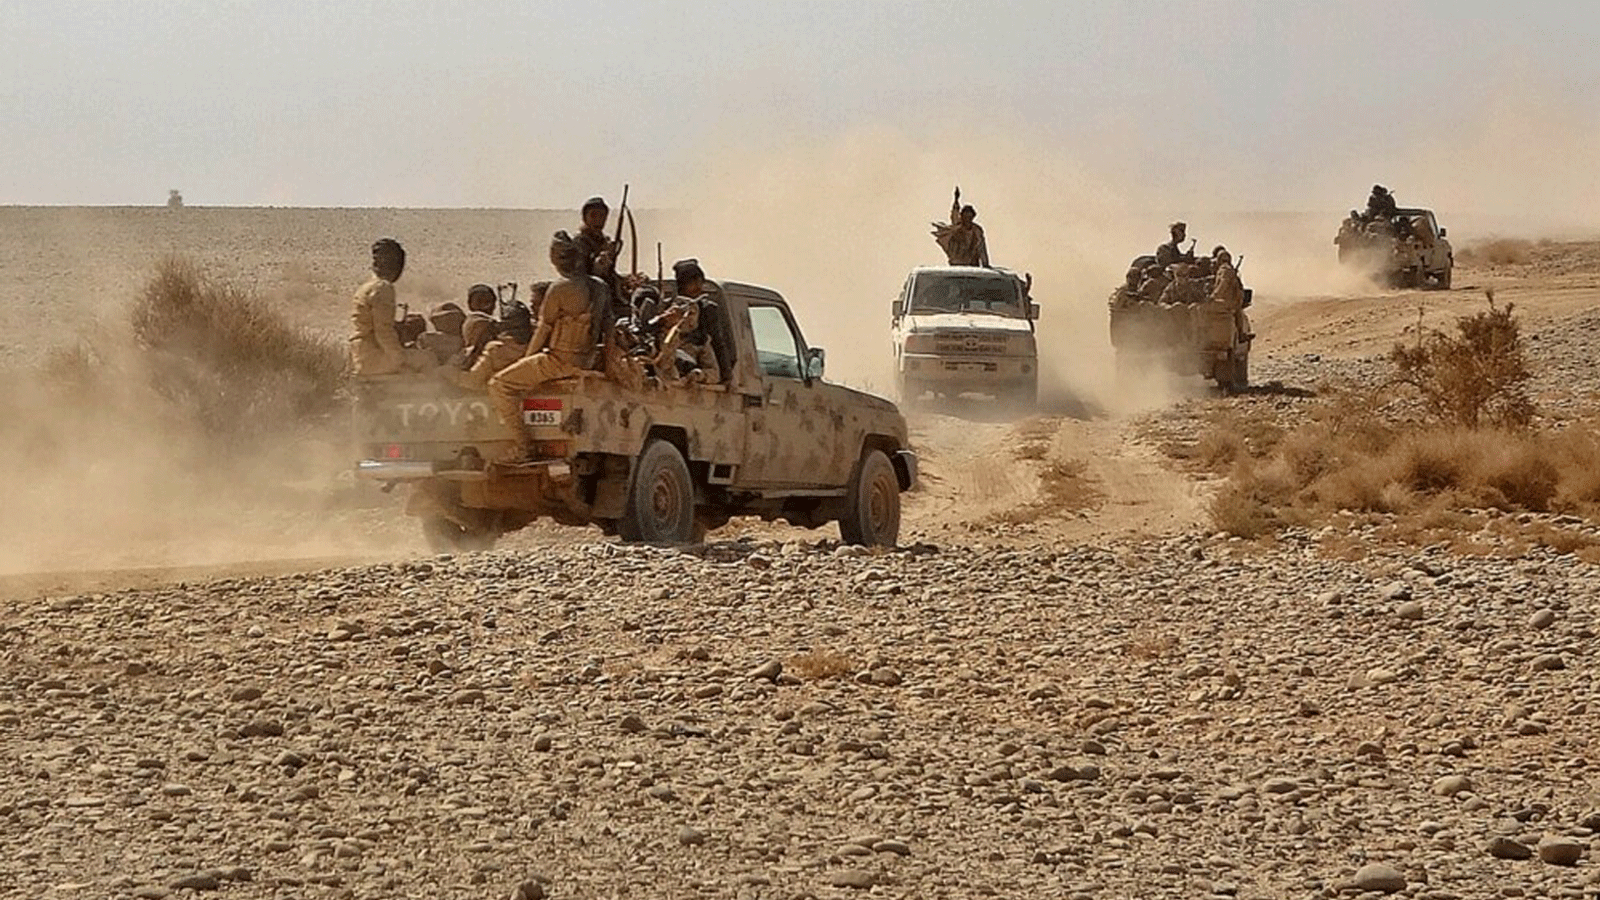 مقاتلون يستقلون شاحنات صغيرة مع اشتباك القوات الموالية للحكومة اليمنية مع المتمردين الحوثيين في الجدعان بمحافظة مأرب اليمنية. 22 نوفمبر / تشرين الثاني 2020.